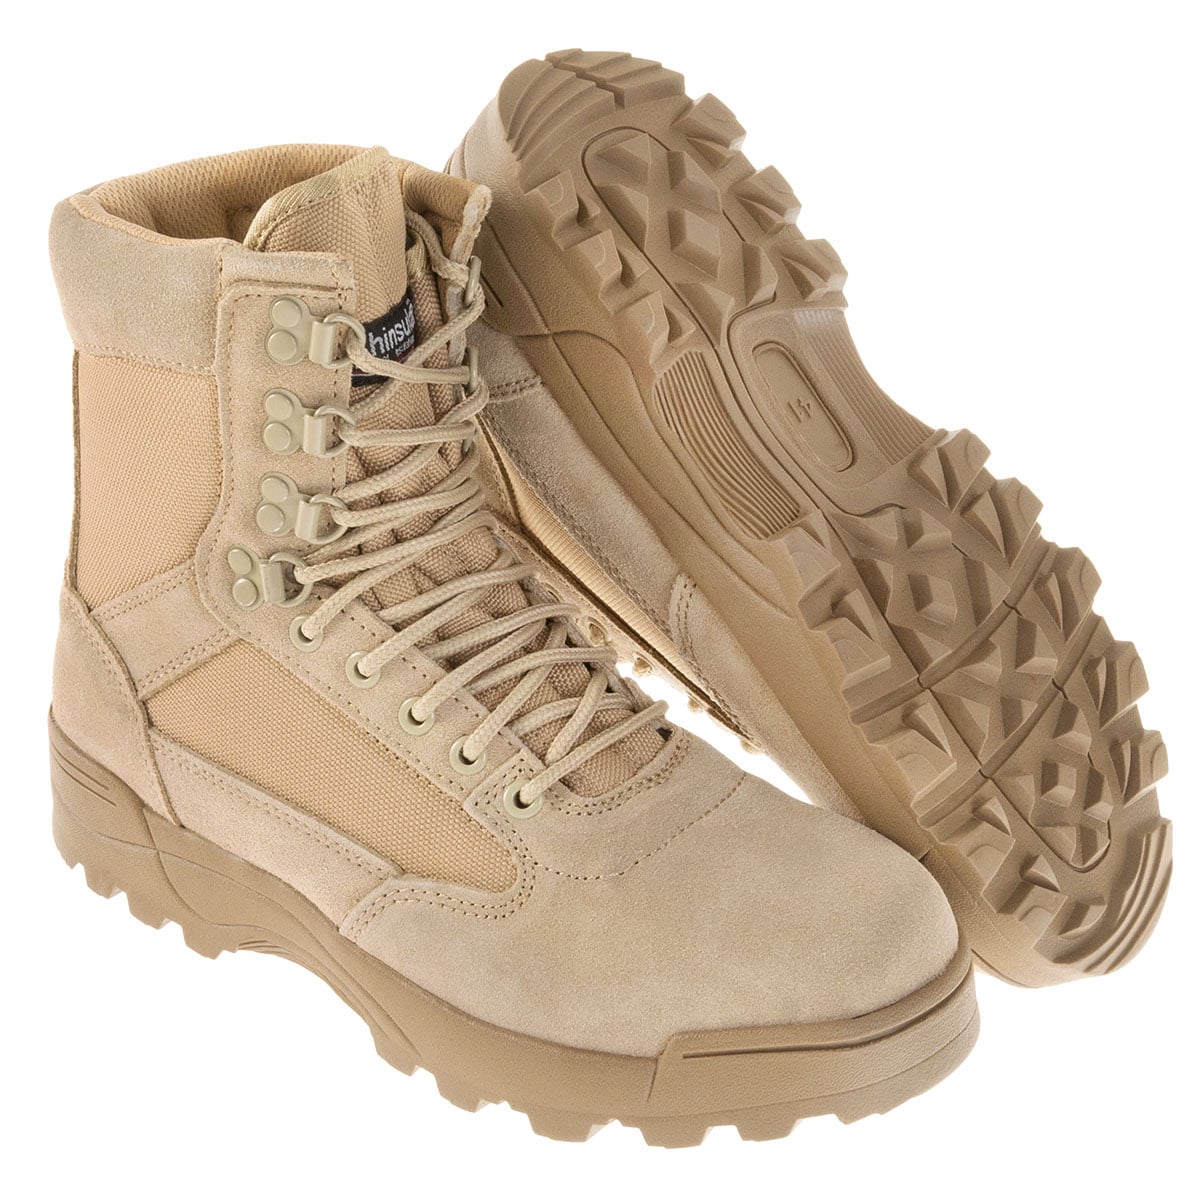 Buty Brandit Tactical Boots - Coyote